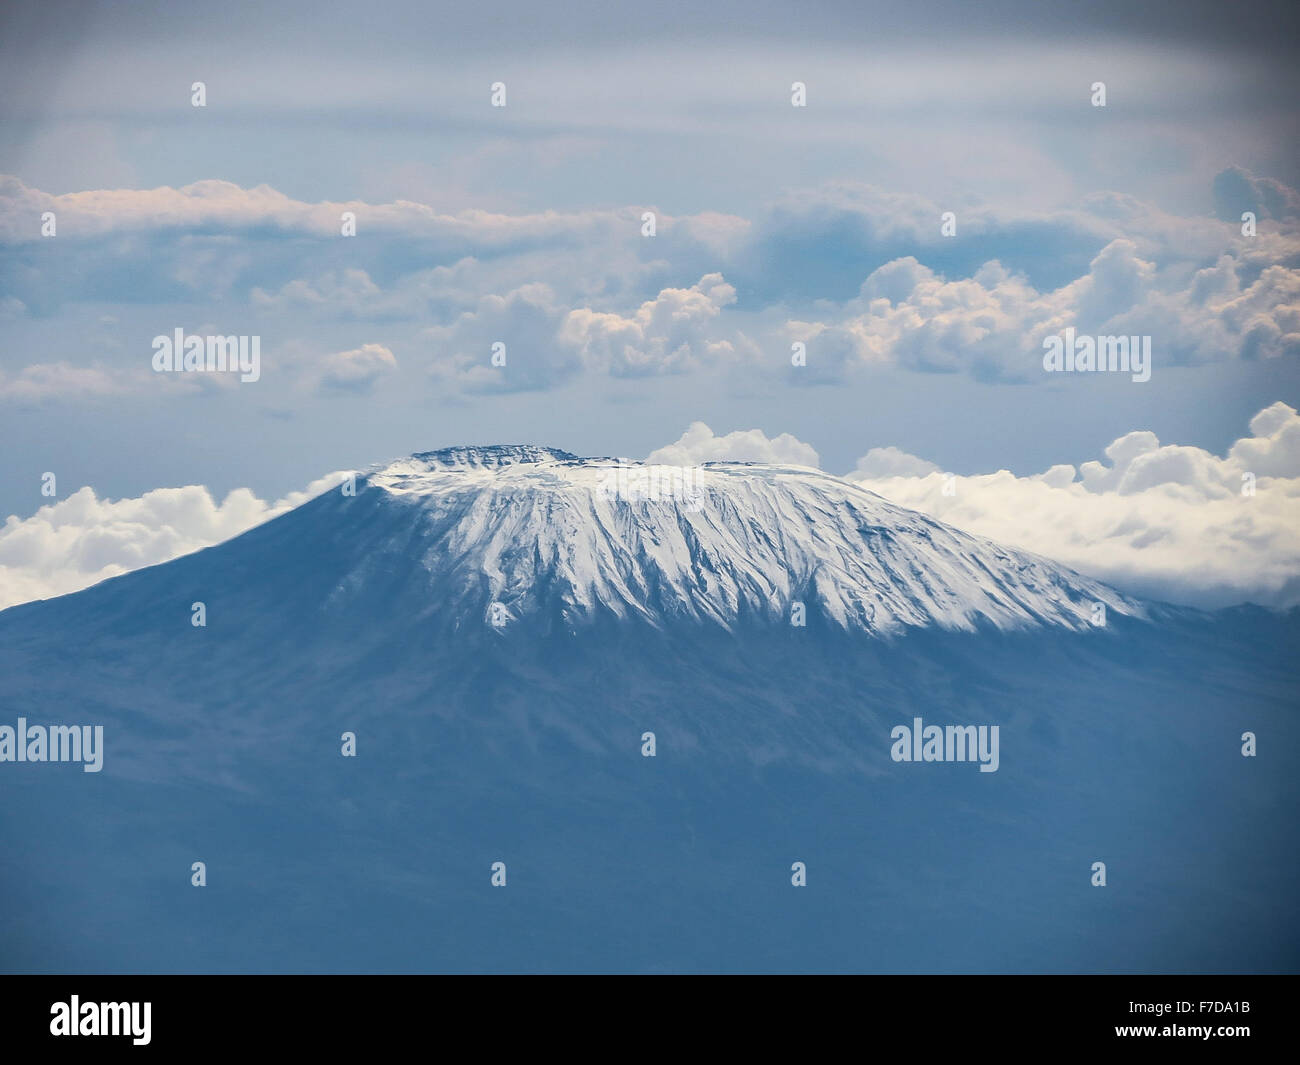 Kilimanjaro (Kibo) seen from a plane Stock Photo